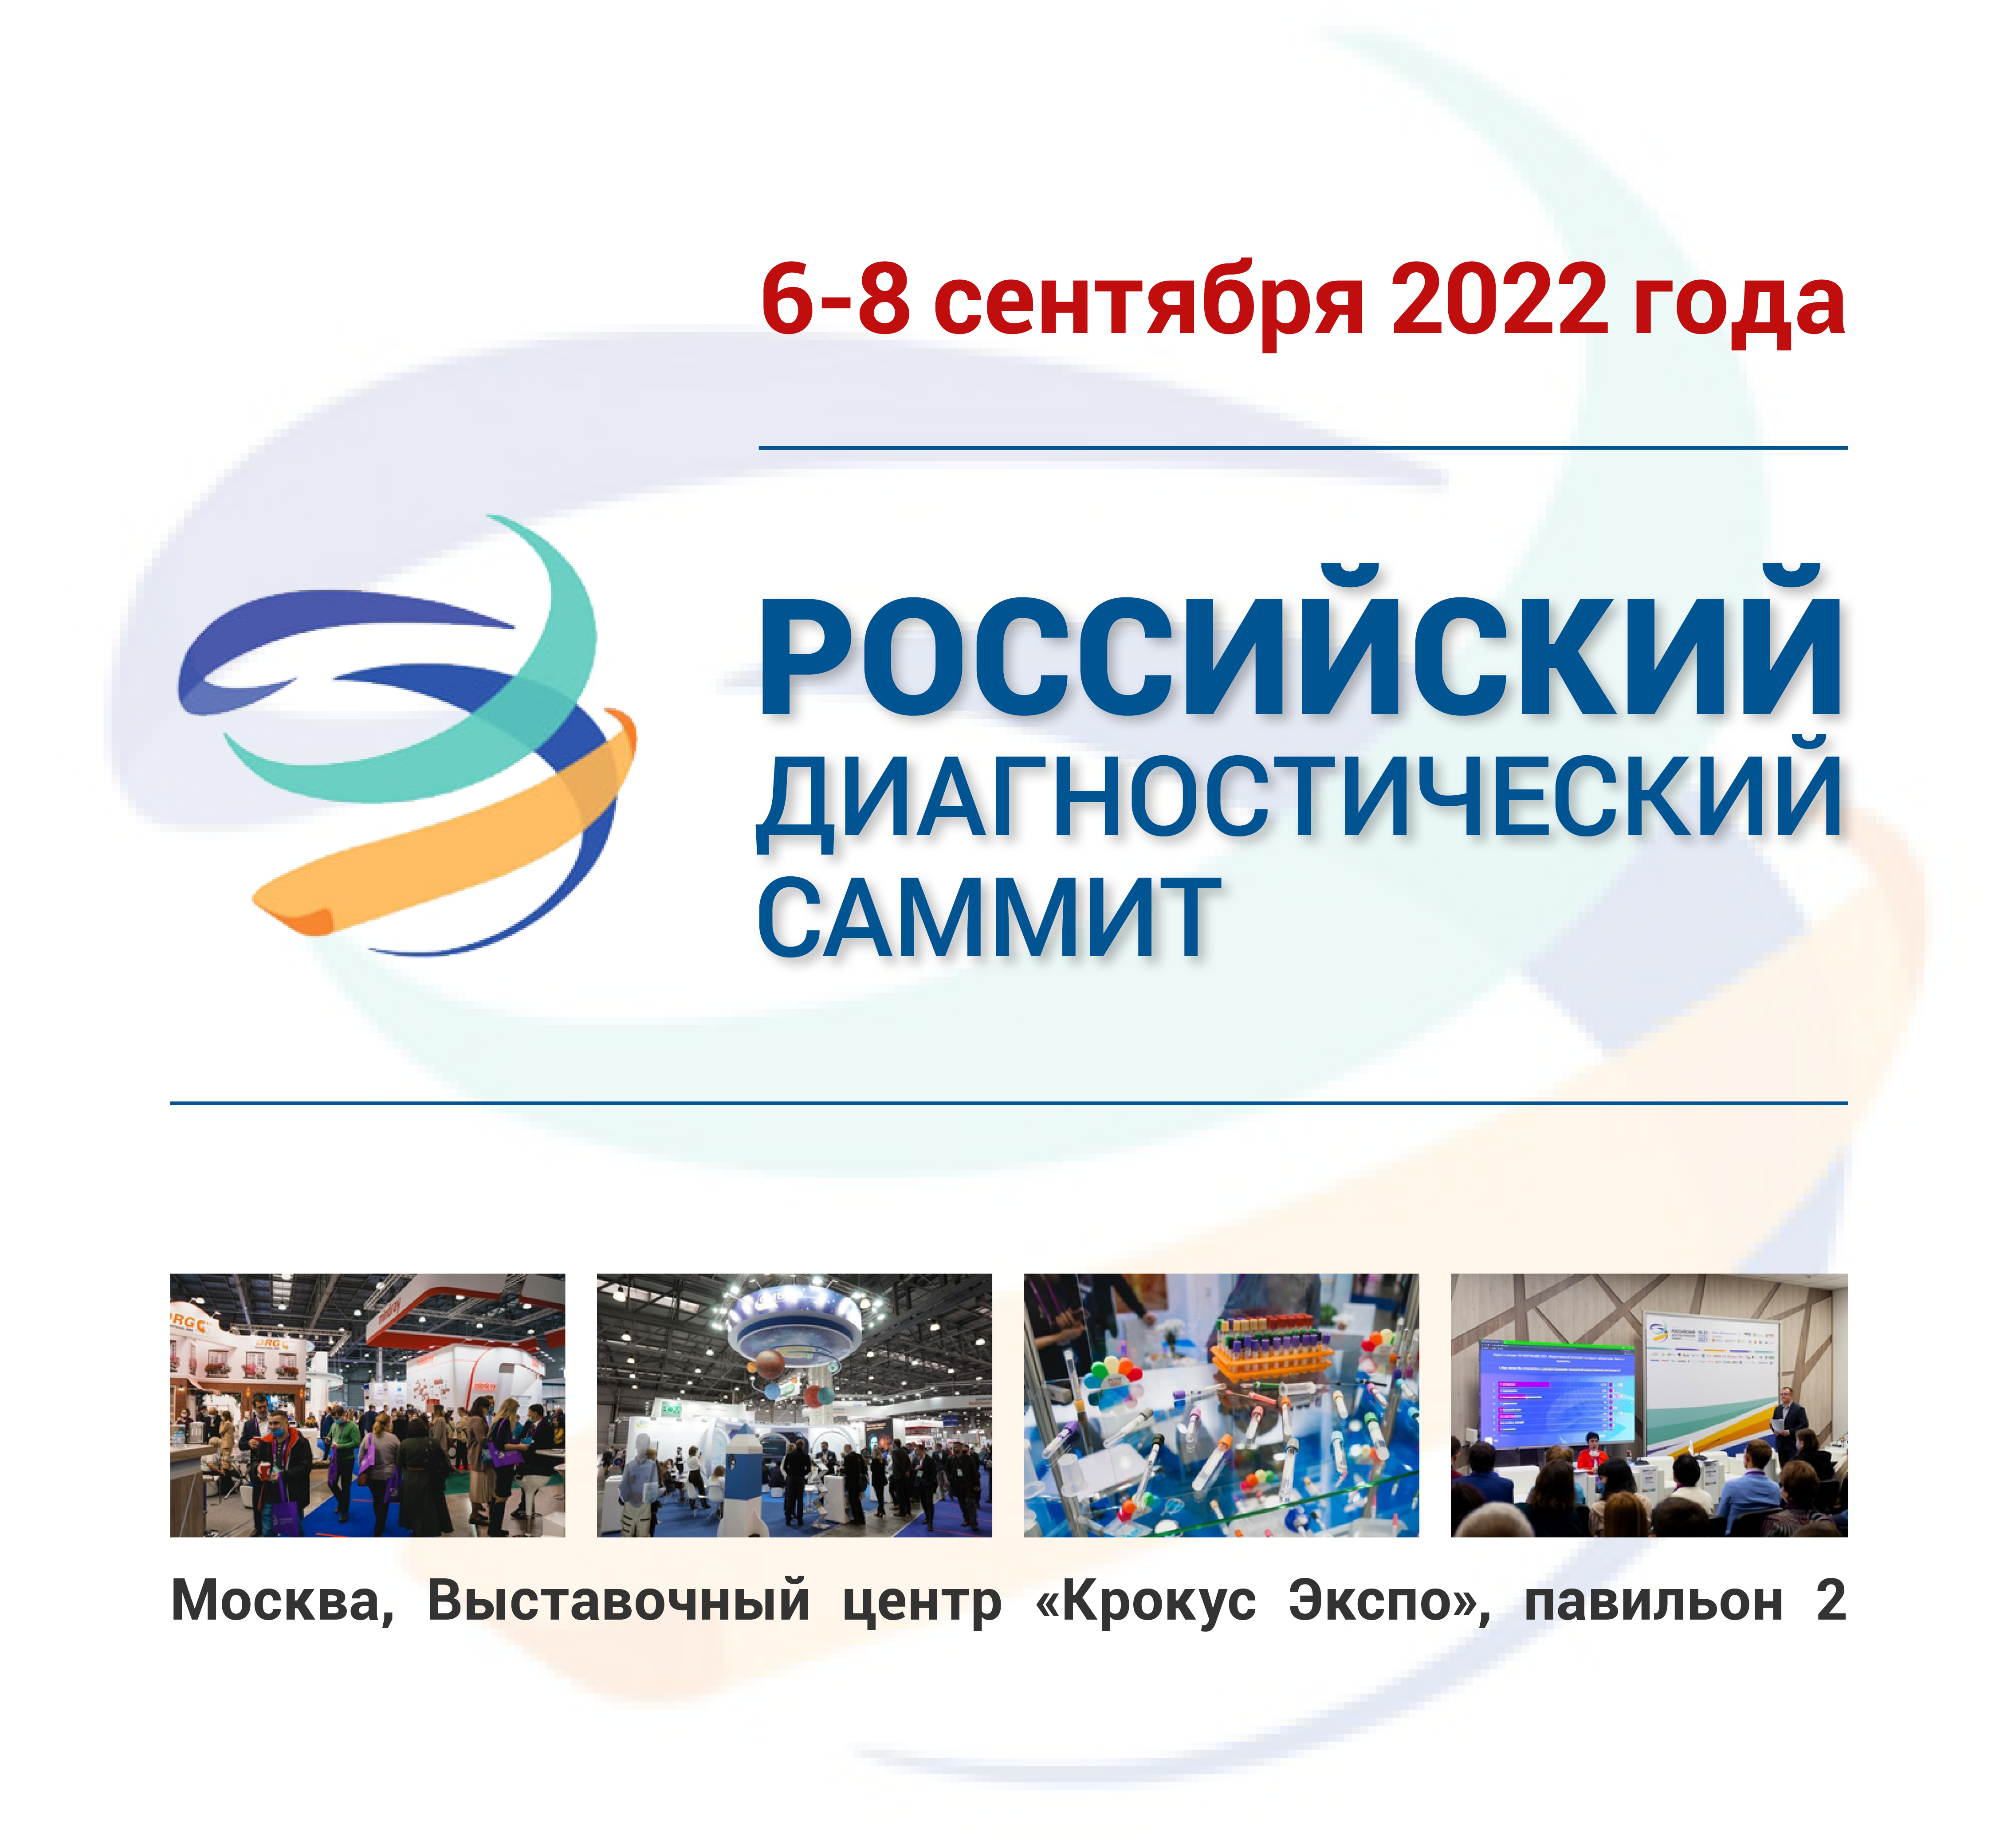 Российский диагностический саммит 2022